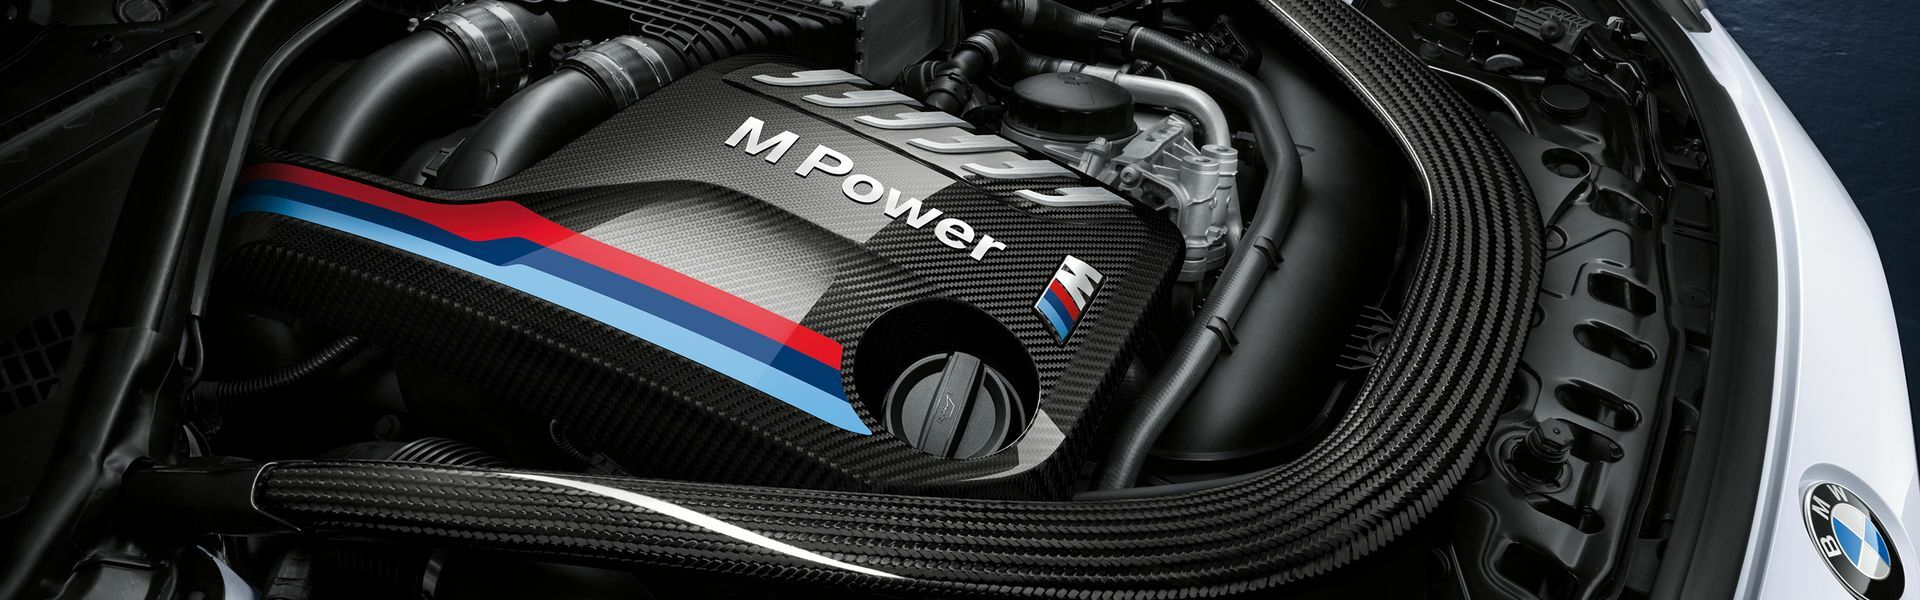 Zvýšení výkonu/ Softwarové úpravy/ Drobné performance díly pro automobil Porsche Panamera 4 970